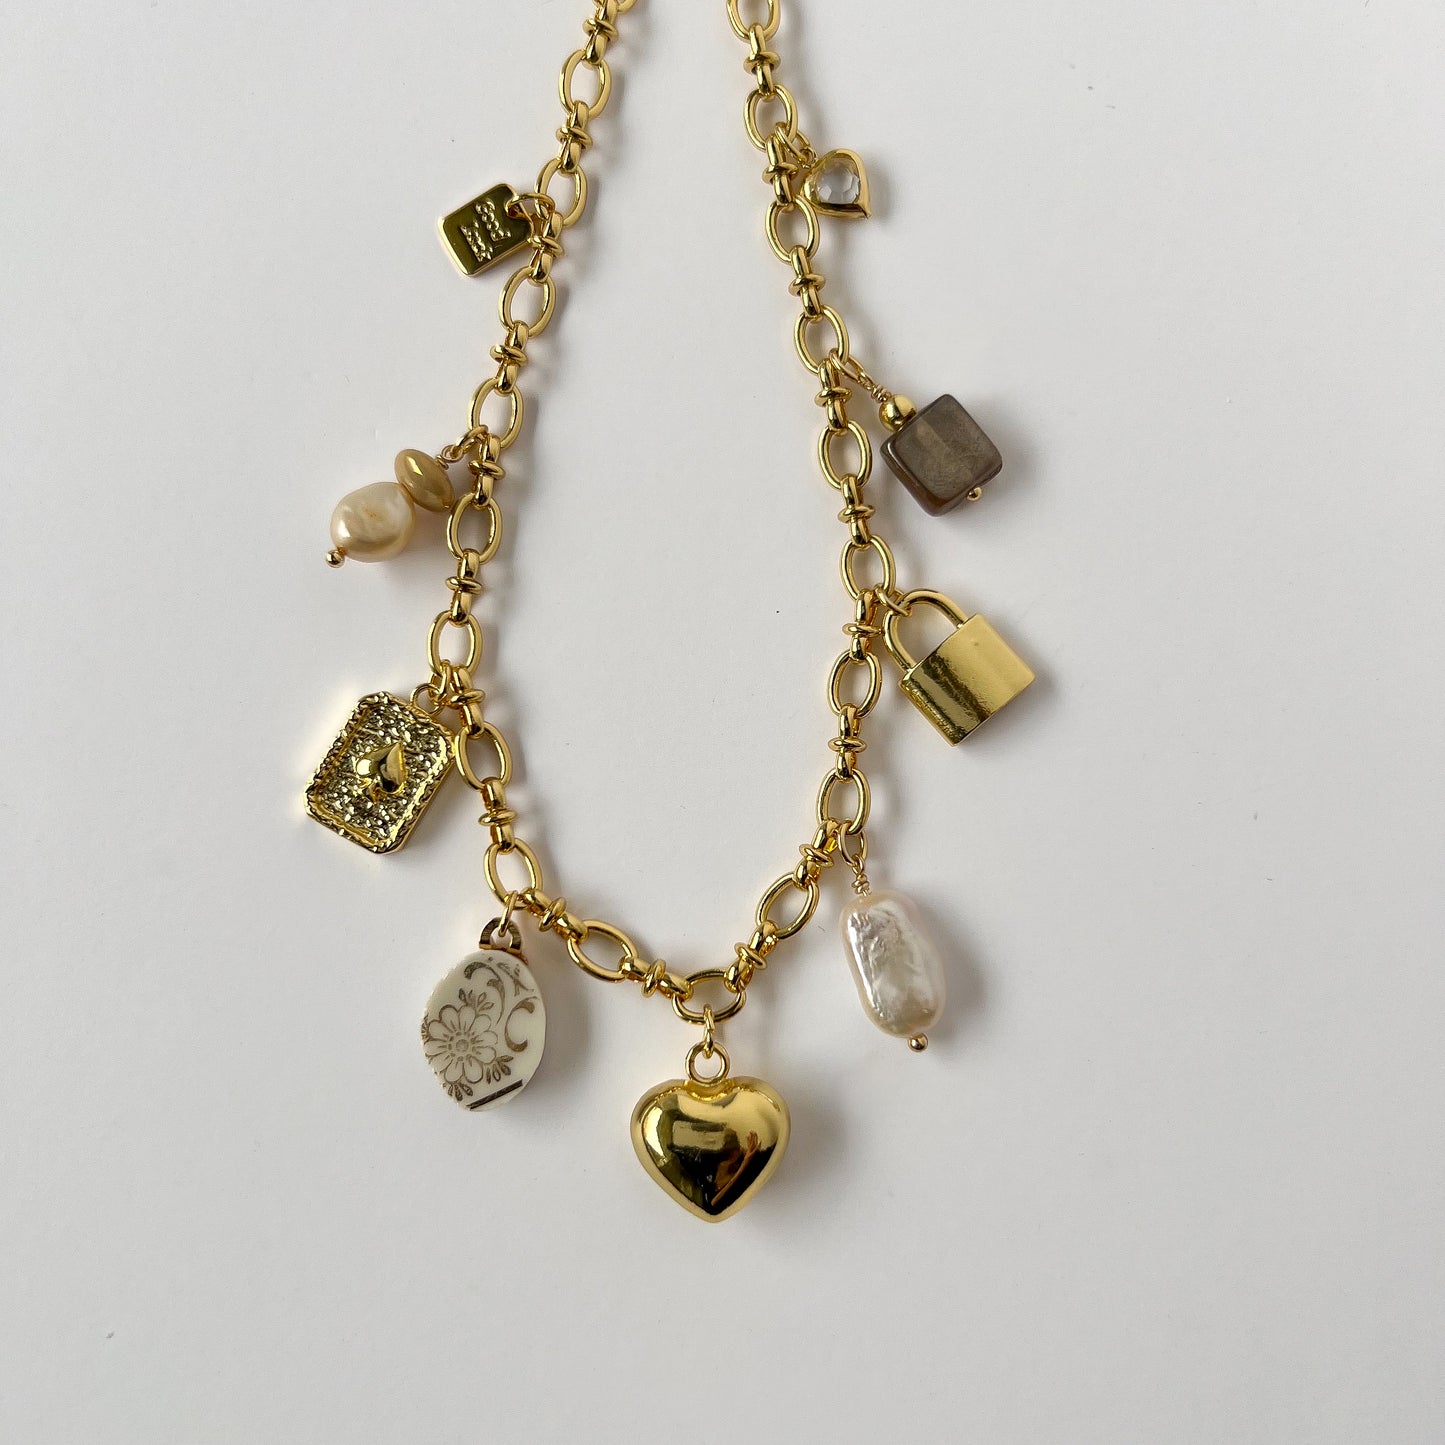 Diana China Charm Necklace